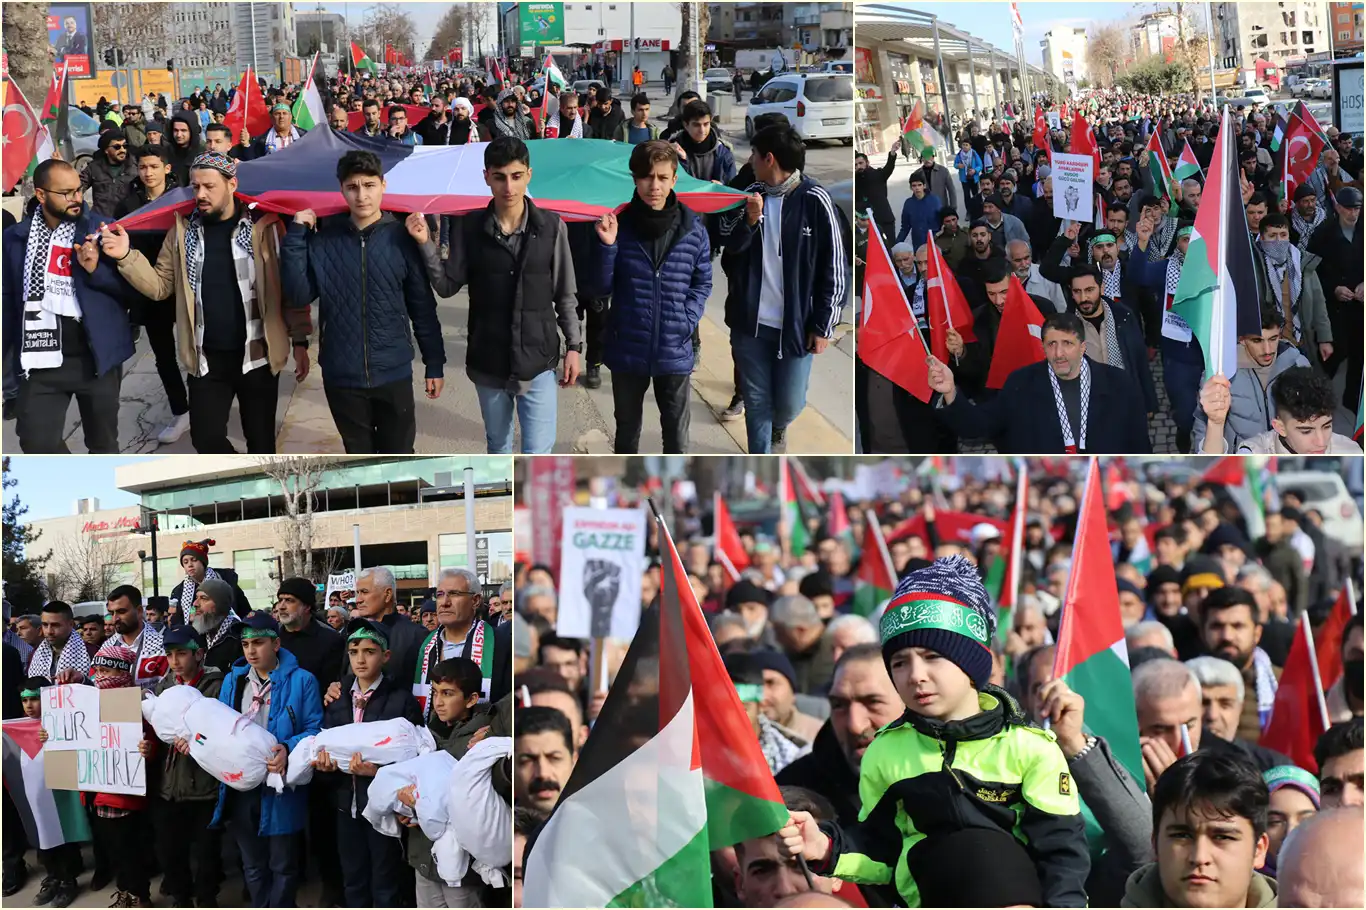 Malatya'da binler, Gazze'de acil ateşkes çağrısı için yürüdü